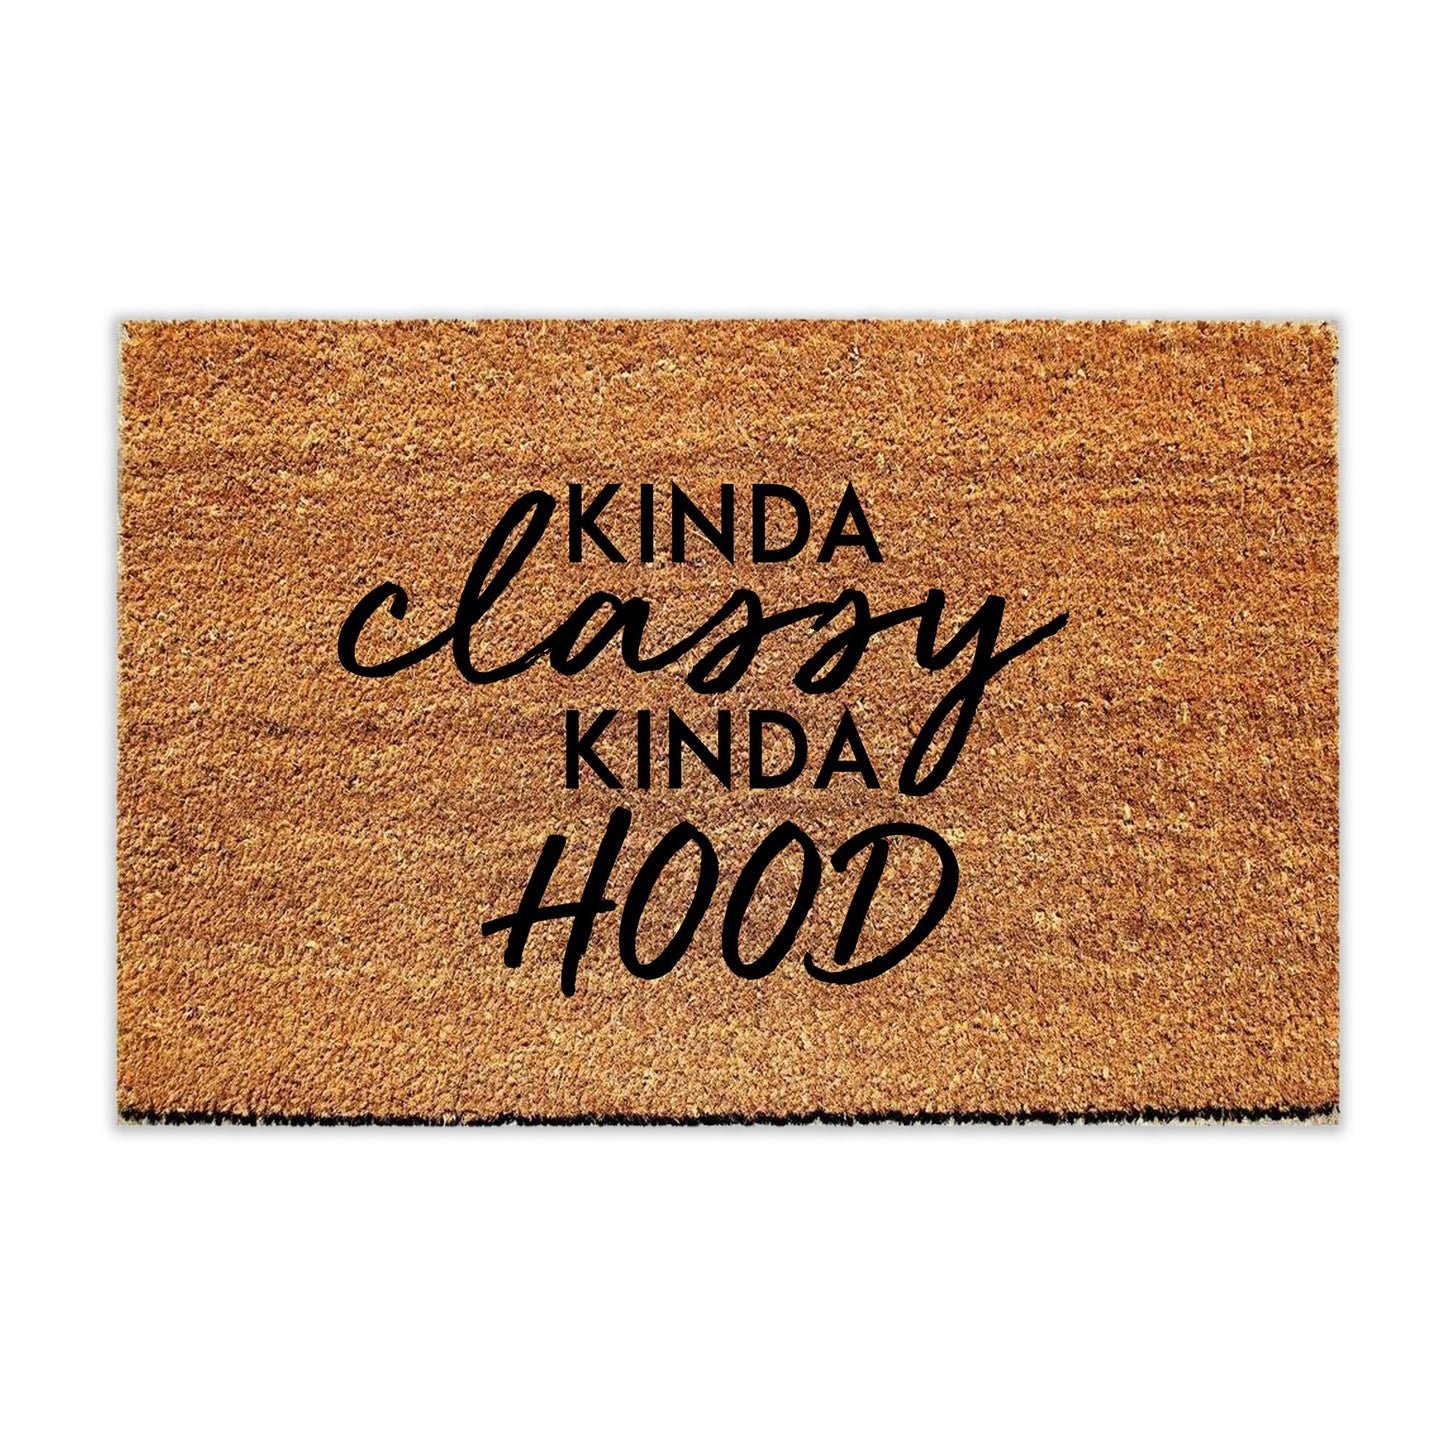 Kinda Classy Kinda Hood Doormat